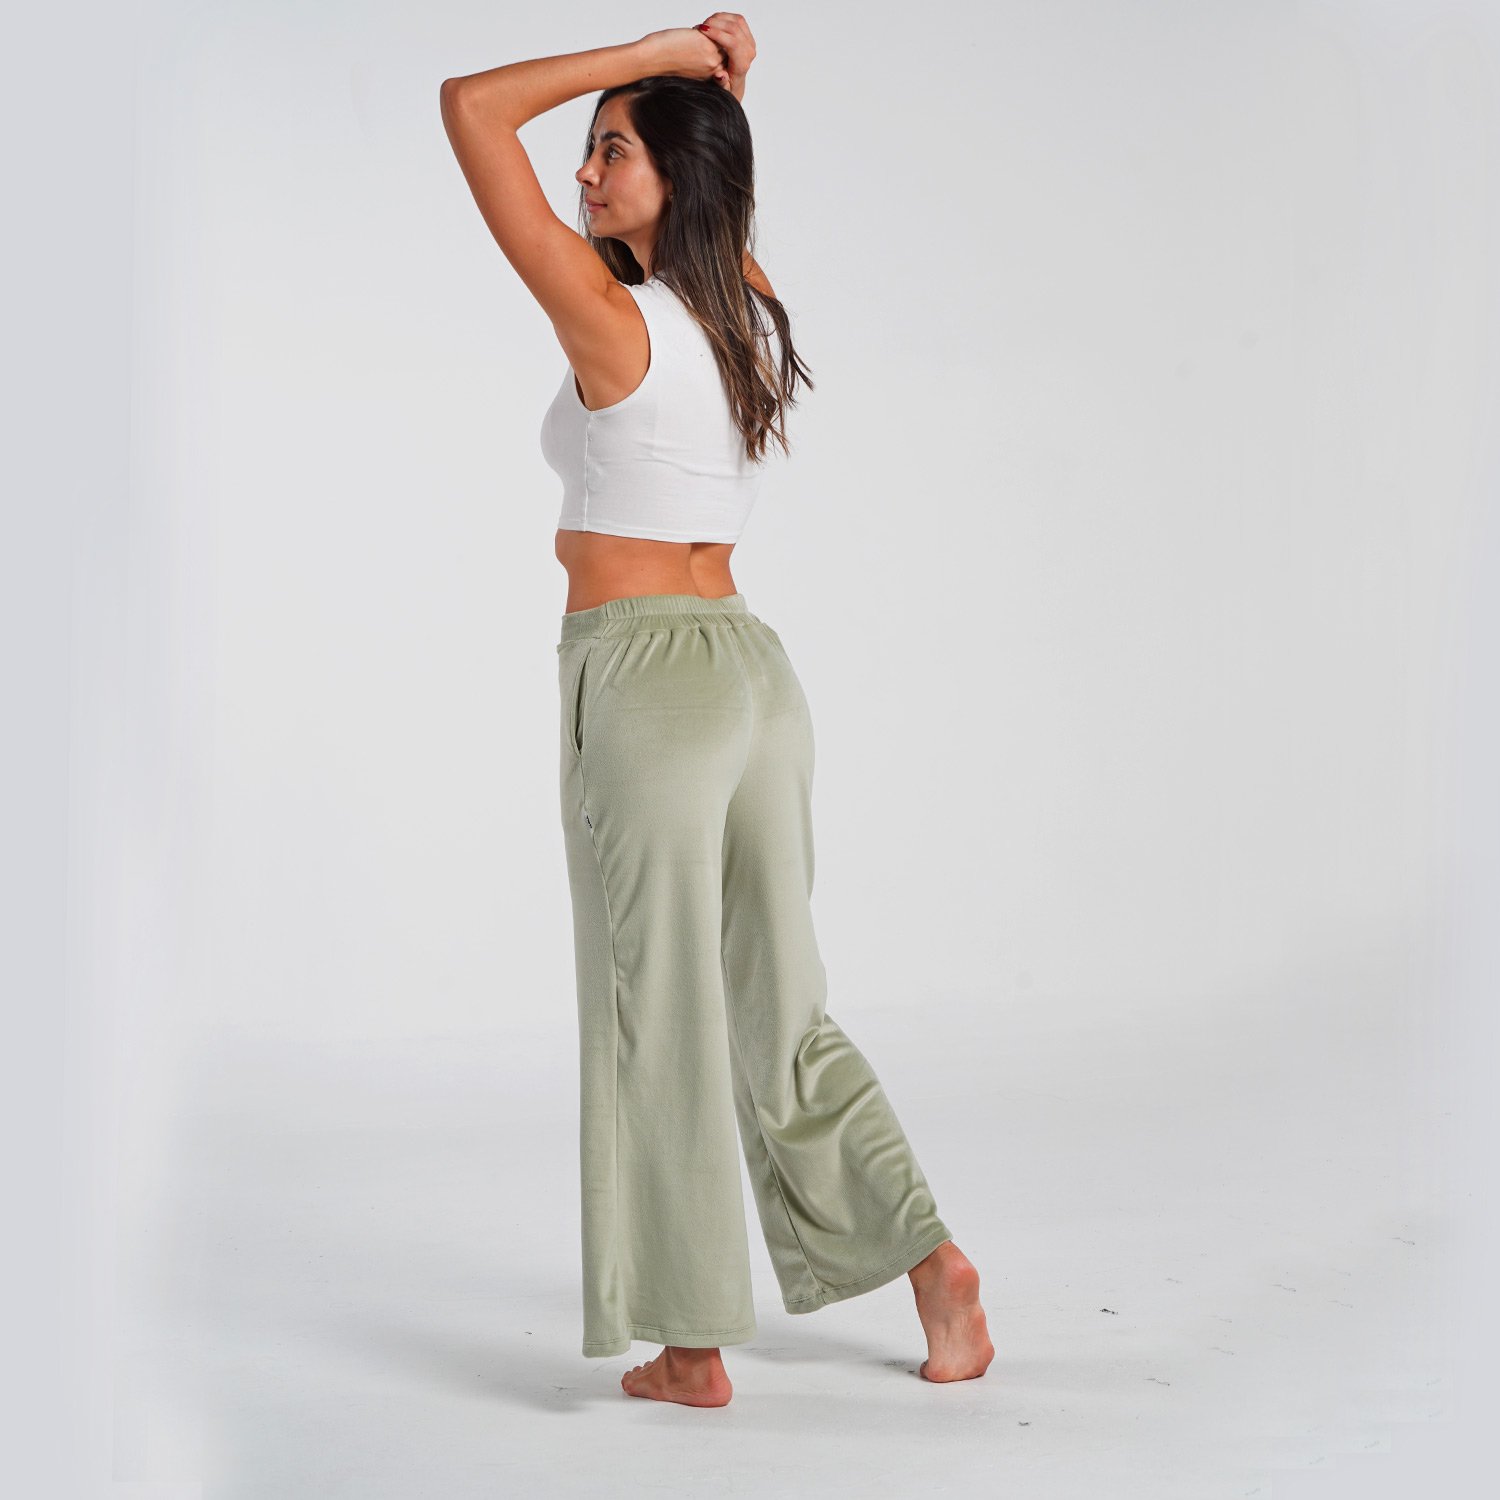 Pantalon ancho loungewear - Pantalon ancho Vital verde pastel - Yeti